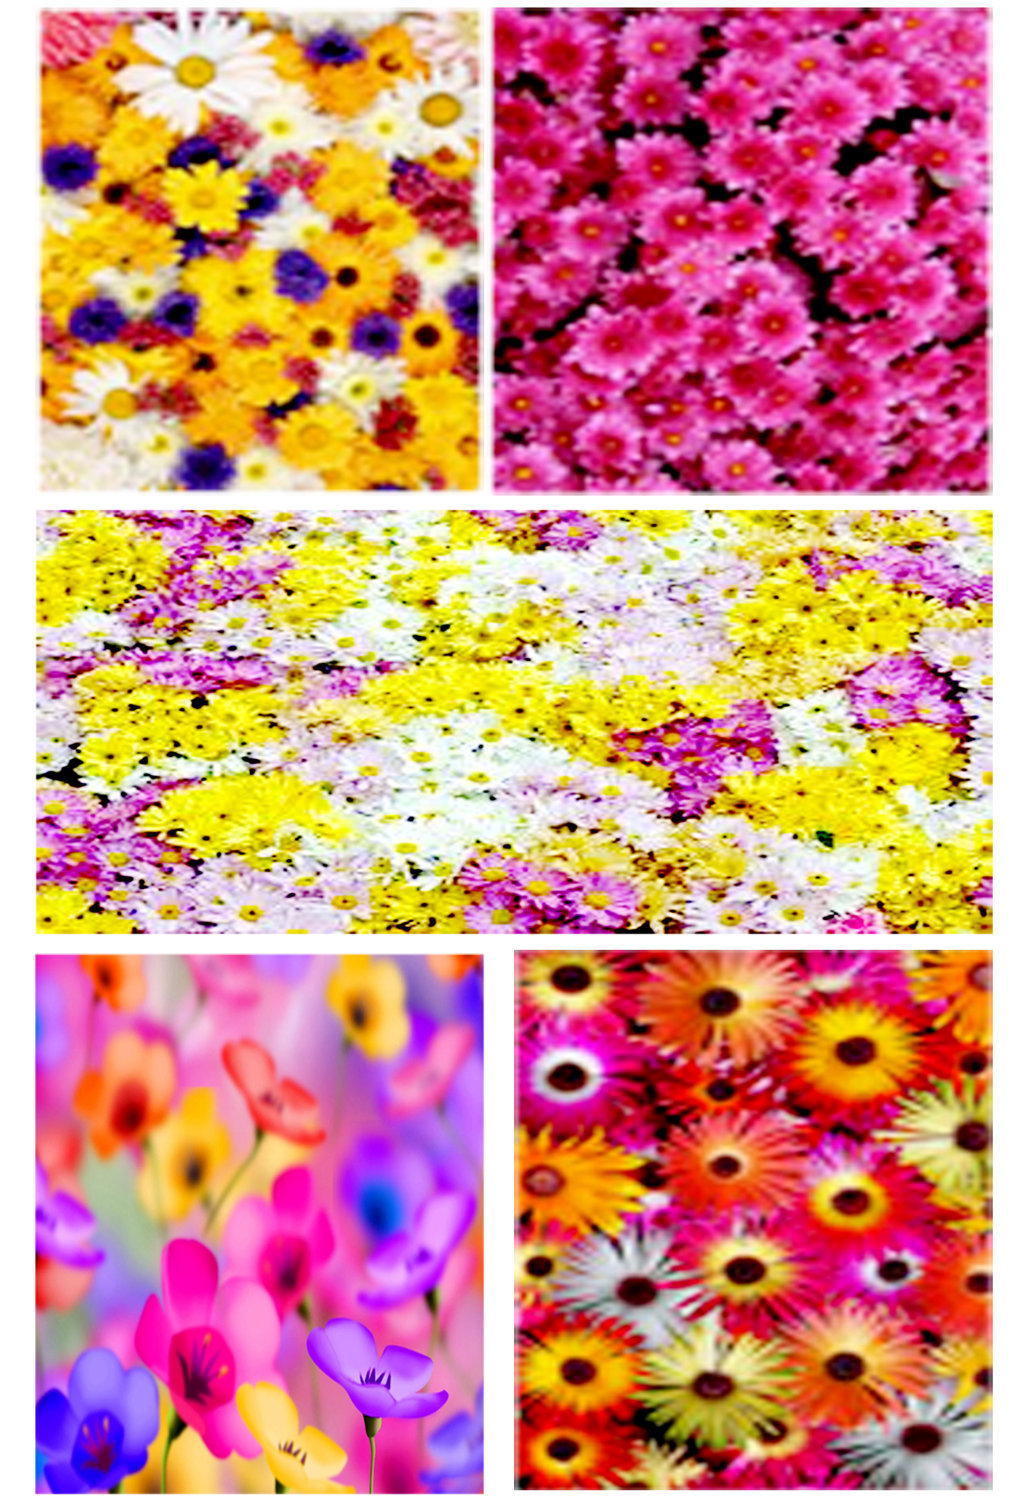 Membuat bingkai foto bermotif bunga  dengan photoshop 